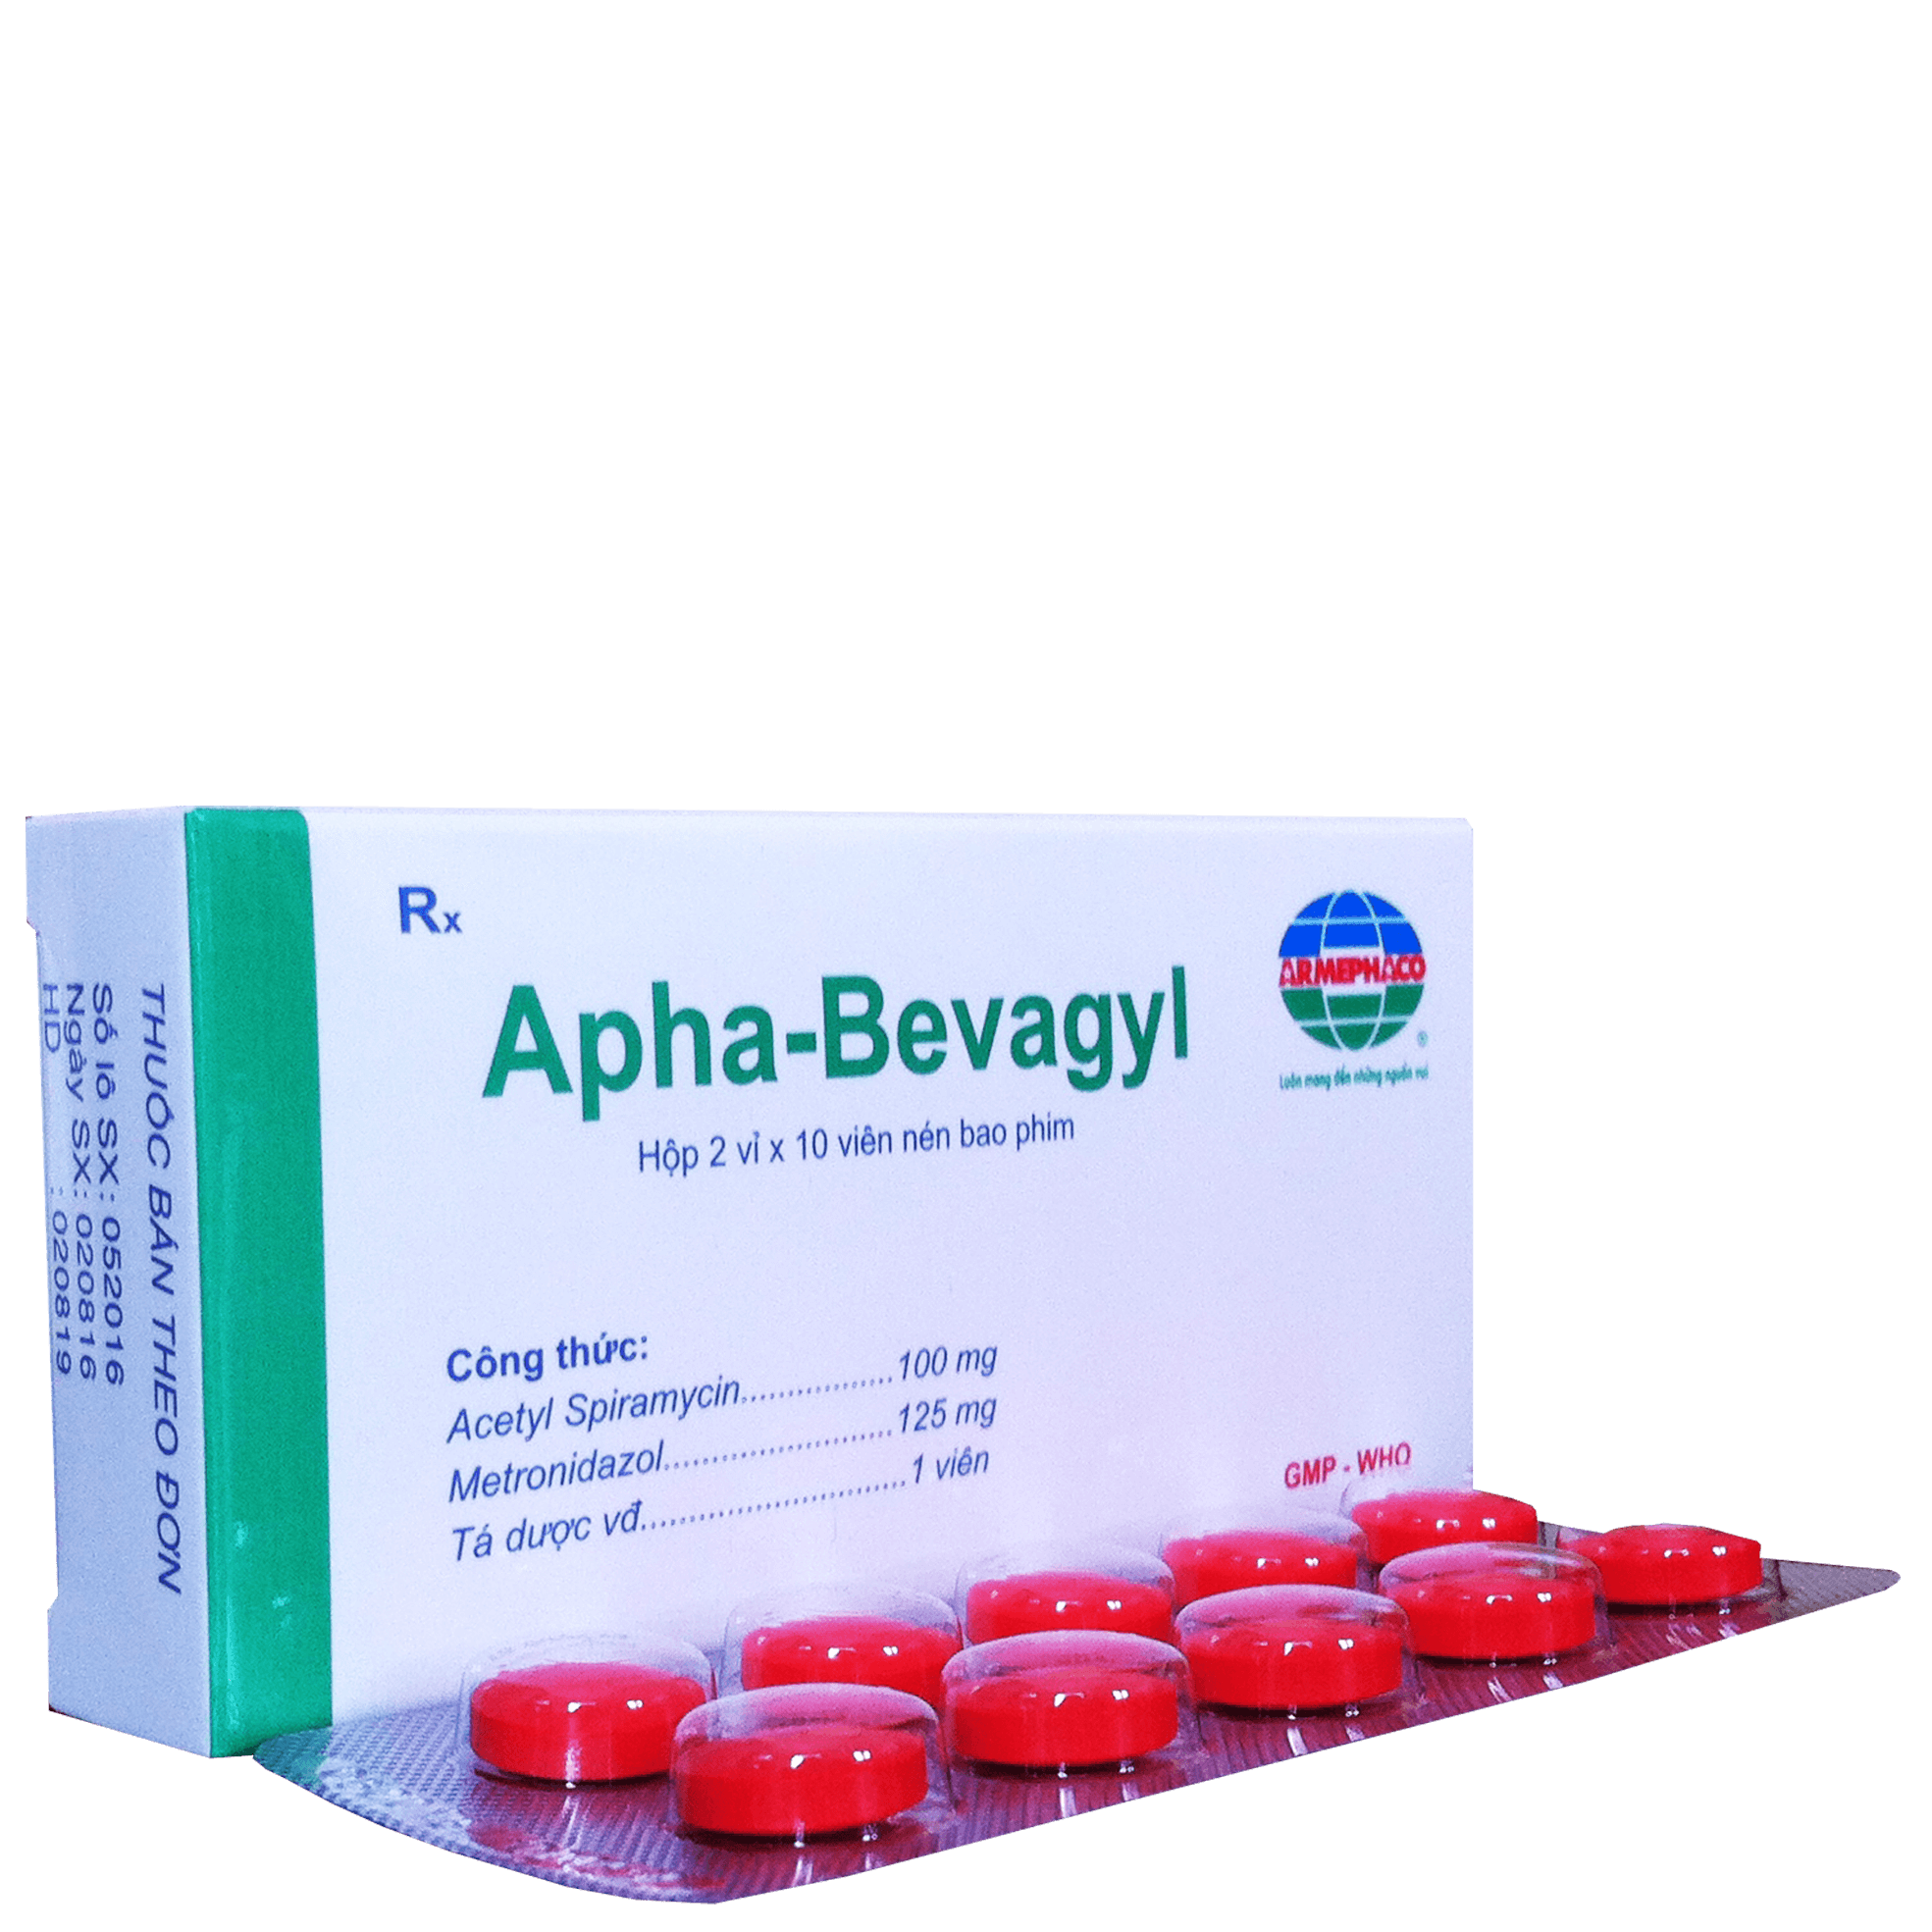 Apha-Bevagyl (Acetyl Spiramycin, Metronidazol) Armephaco (H/20v)